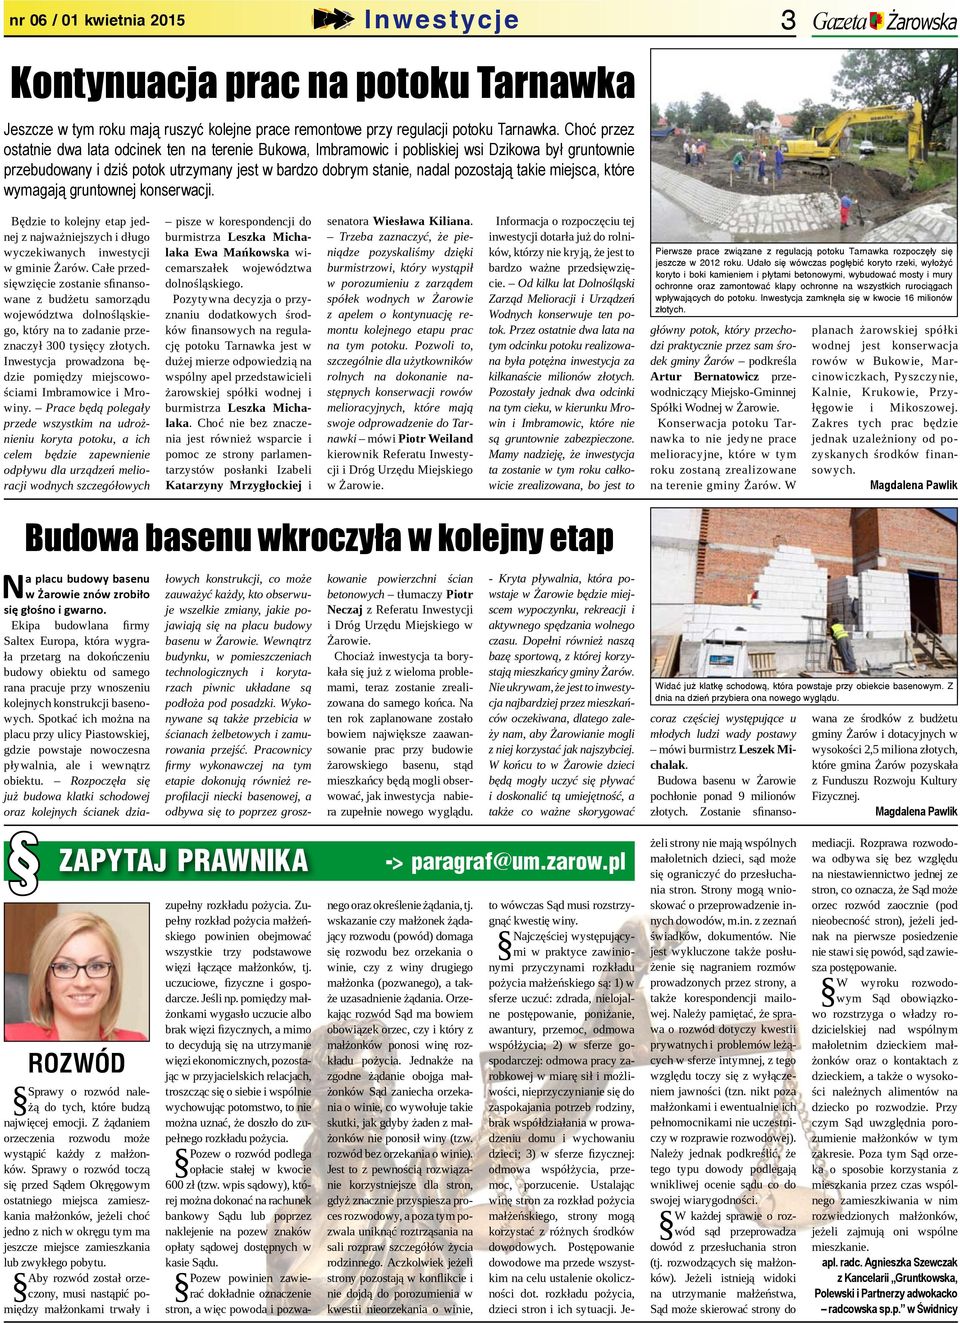 miejsca, które wymagają gruntownej konserwacji. Gazeta Żarowska Będzie to kolejny etap jednej z najważniejszych i długo wyczekiwanych inwestycji w gminie Żarów.